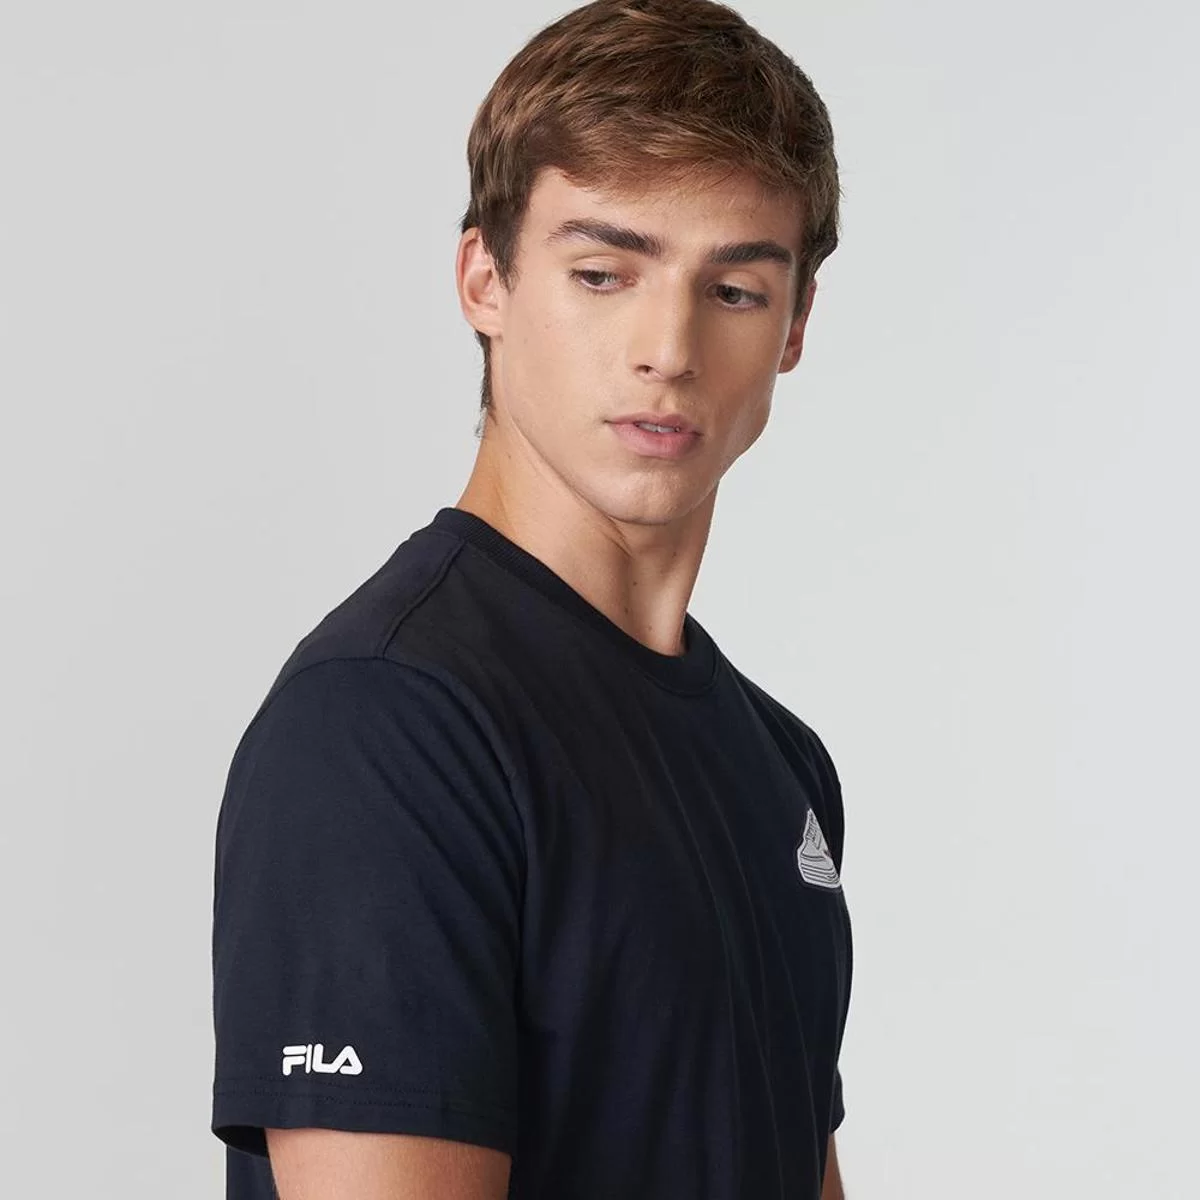 Camiseta Fila Comfort Tennis 88 Masc